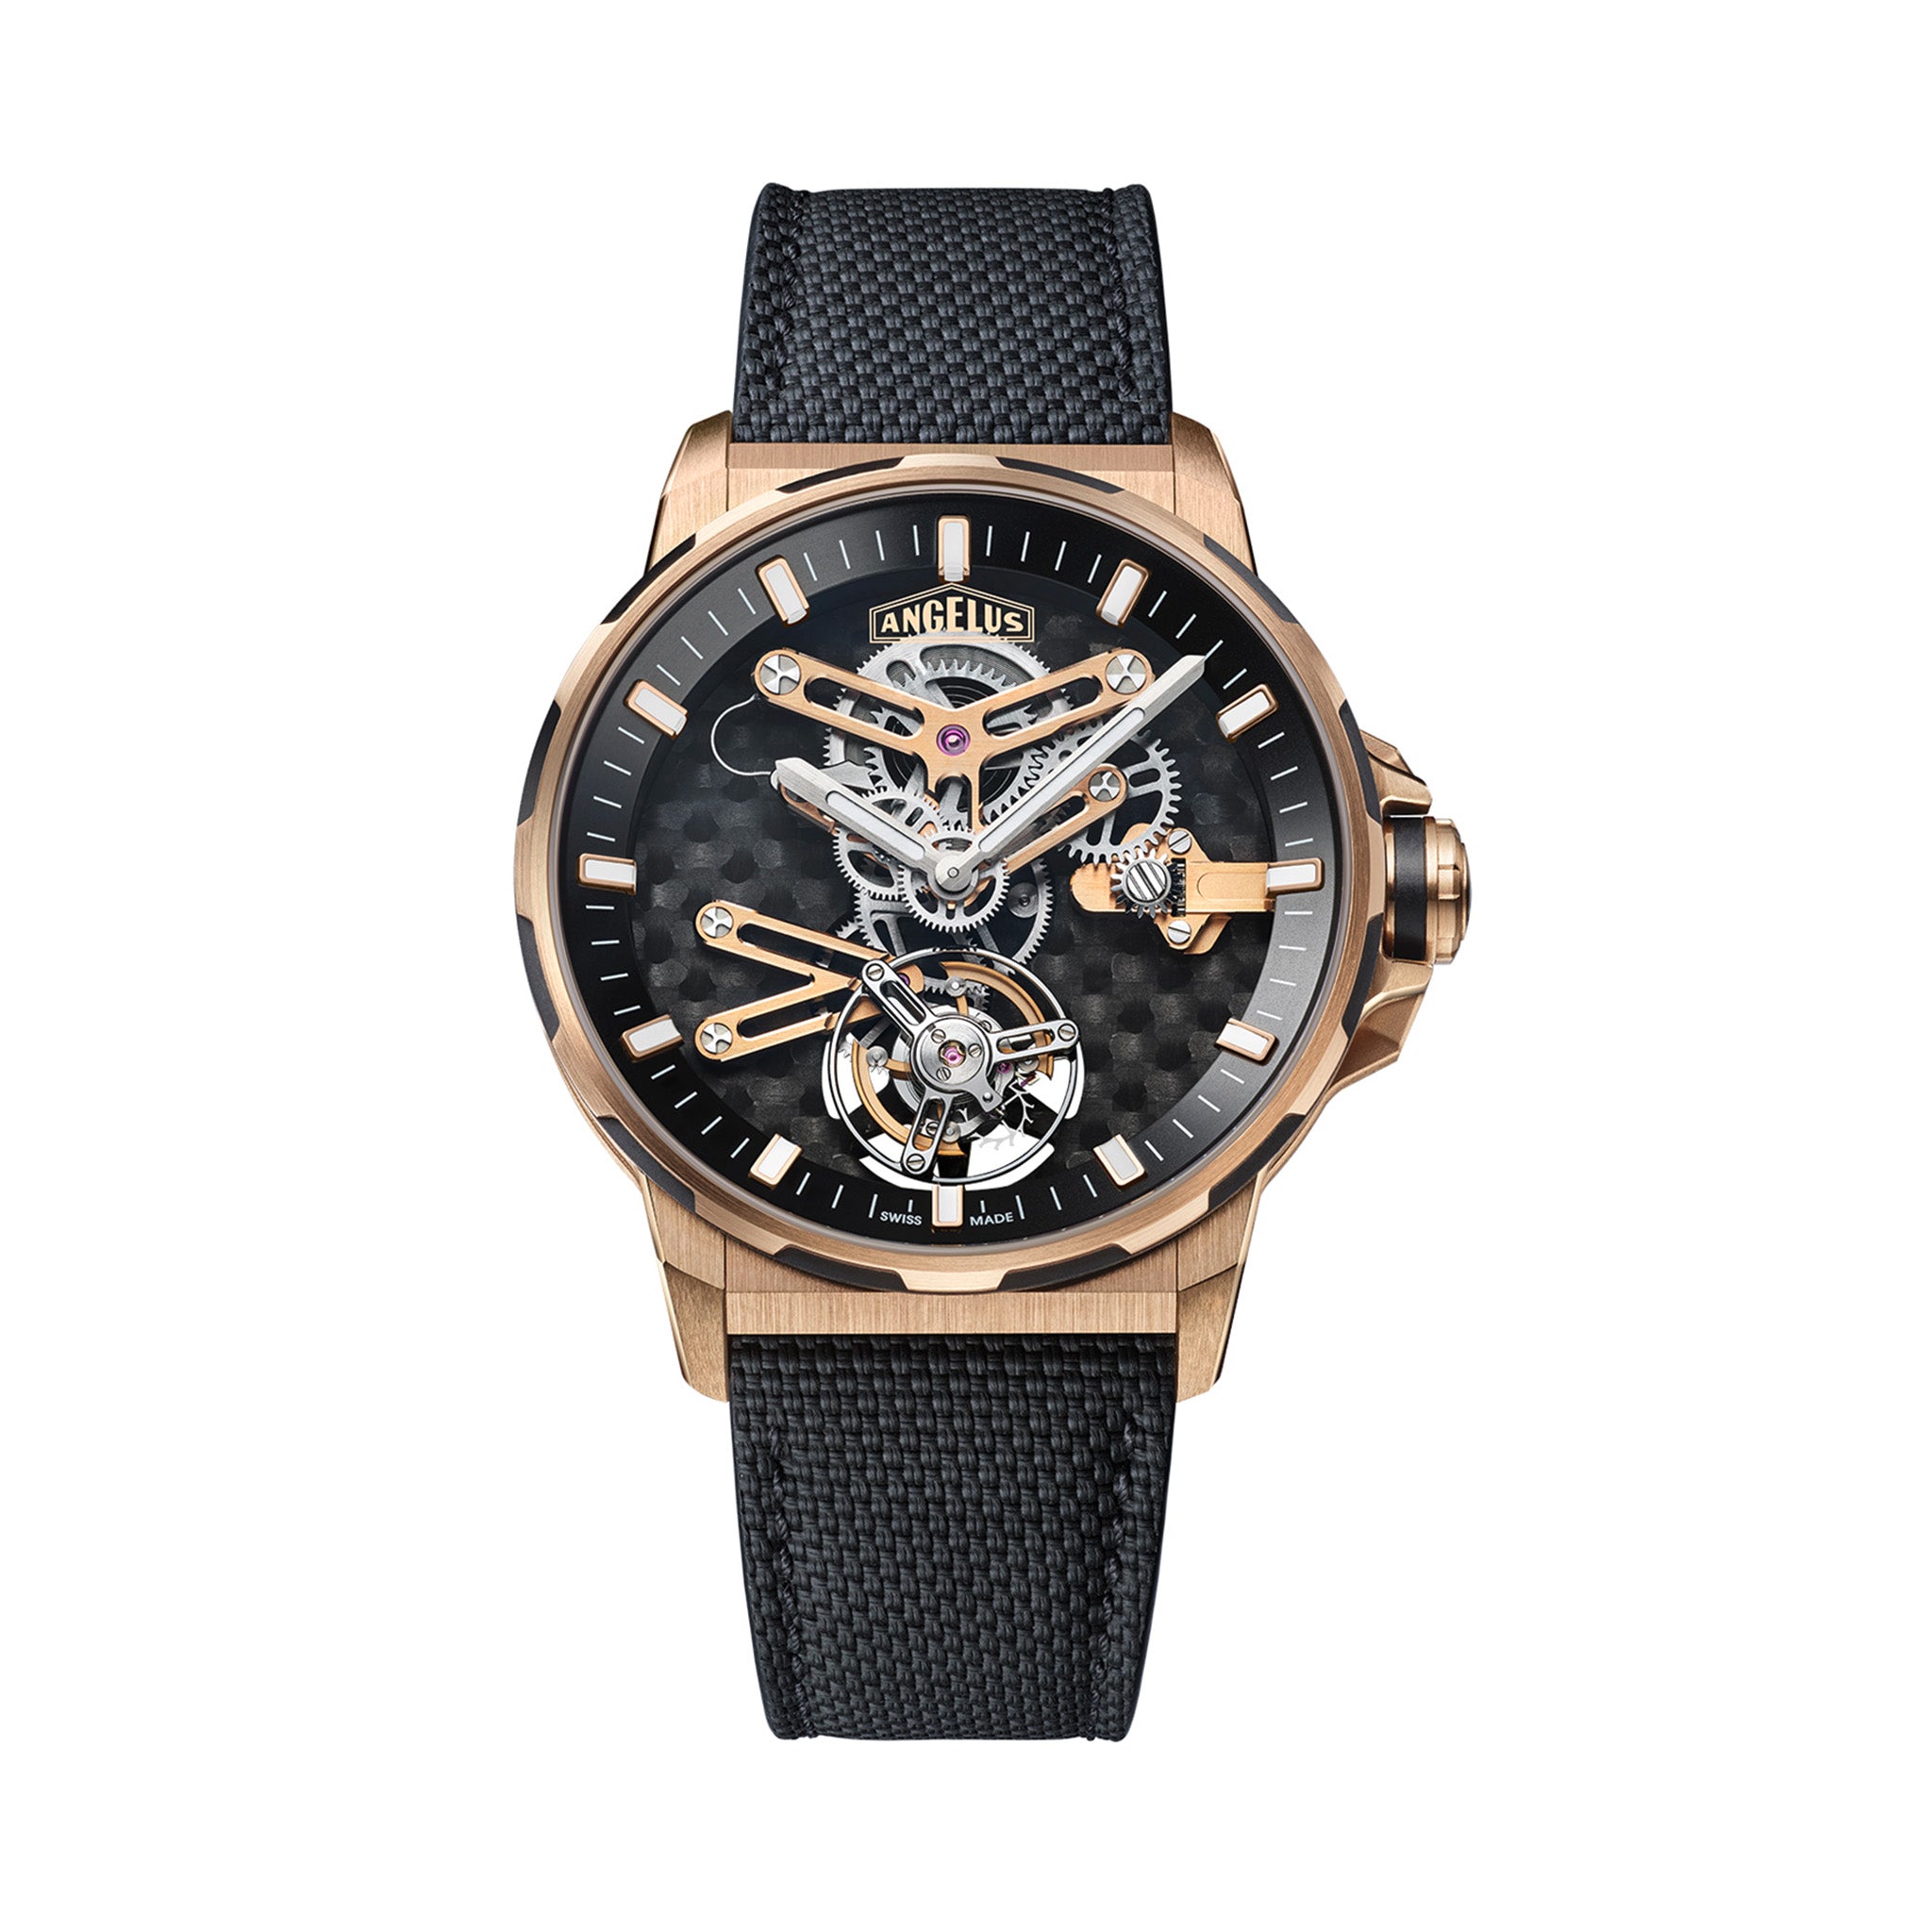 Angelus U10 Tourbillon Lumiere Watch - Exquisite Timepieces, Luxury Watches